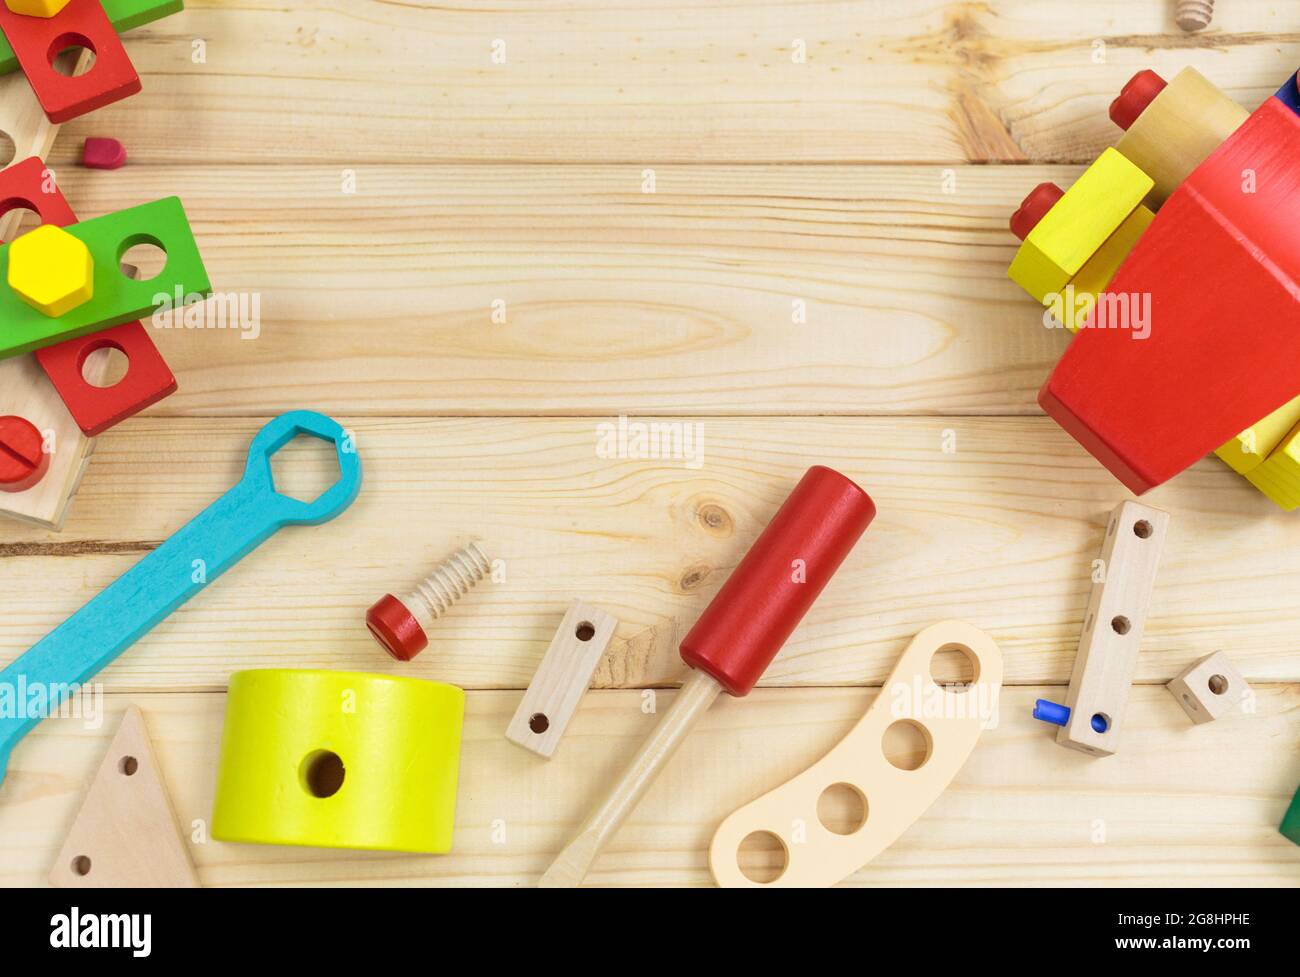 Ein farbenfroher Holzbausatz für Kinder auf Holz. Set von Werkzeugen auf Holztisch. Spiele und Werkzeuge für Kinder in der Vorschule oder Kindertagesstätte. Natürlich, umweltfreundlich Stockfoto